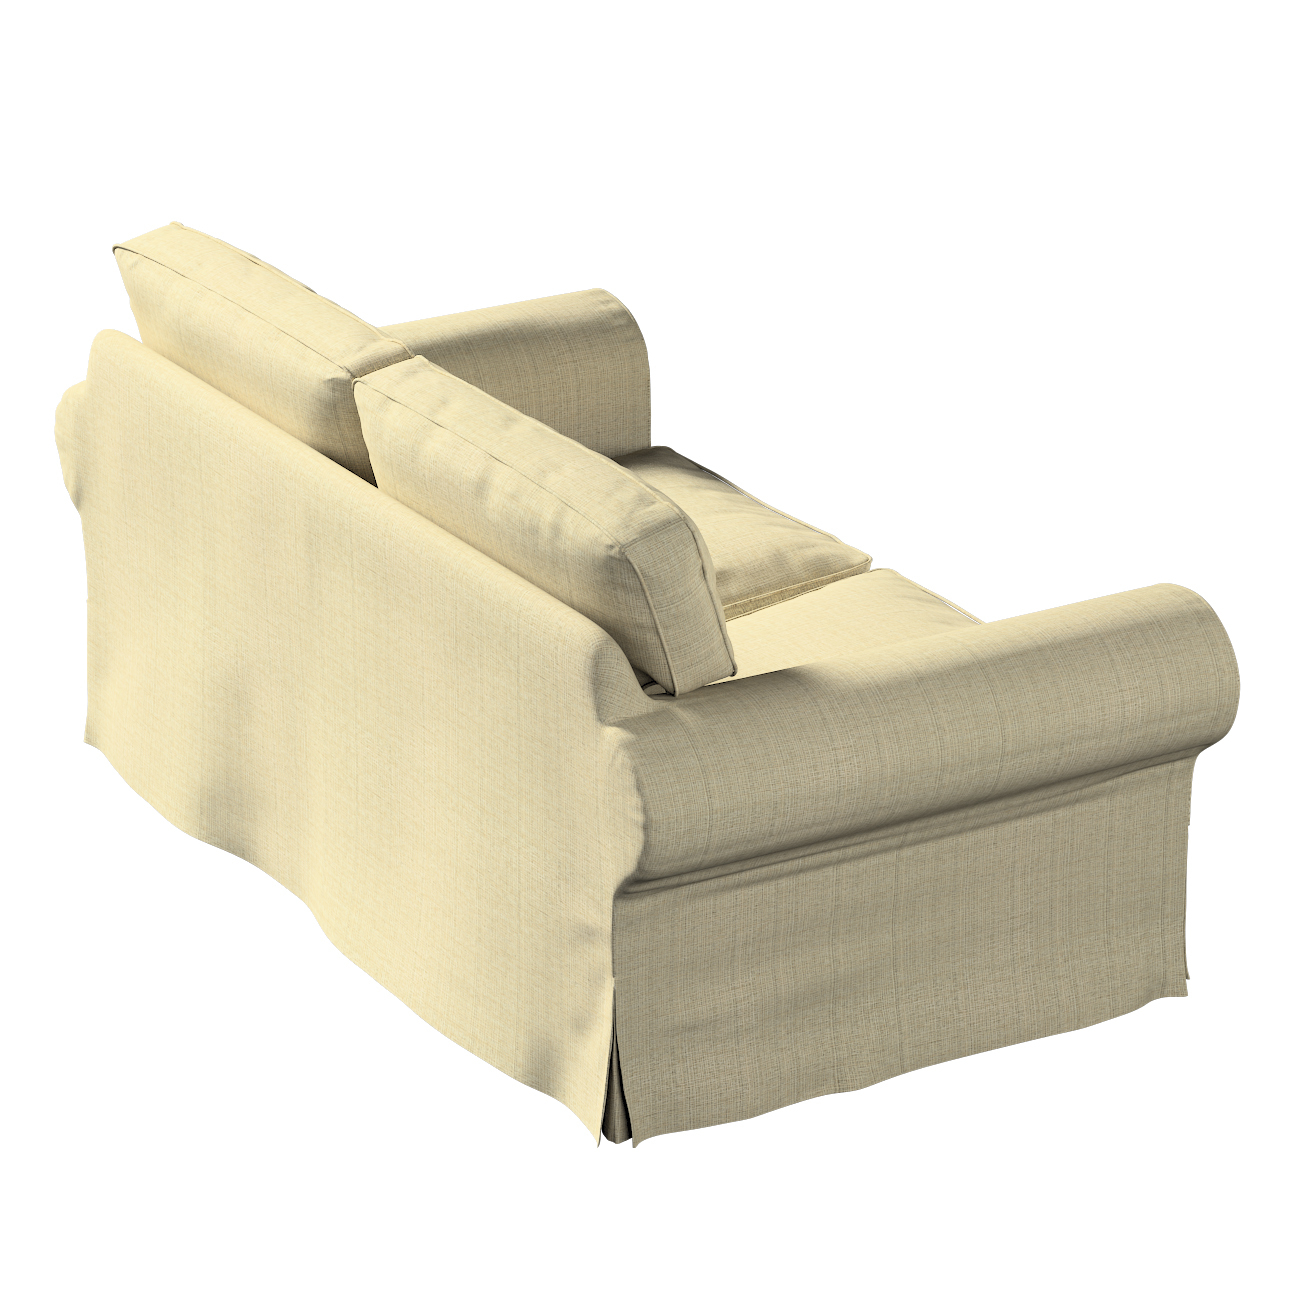 Bezug für Ektorp 2-Sitzer Sofa nicht ausklappbar, beige-creme, Sofabezug fü günstig online kaufen